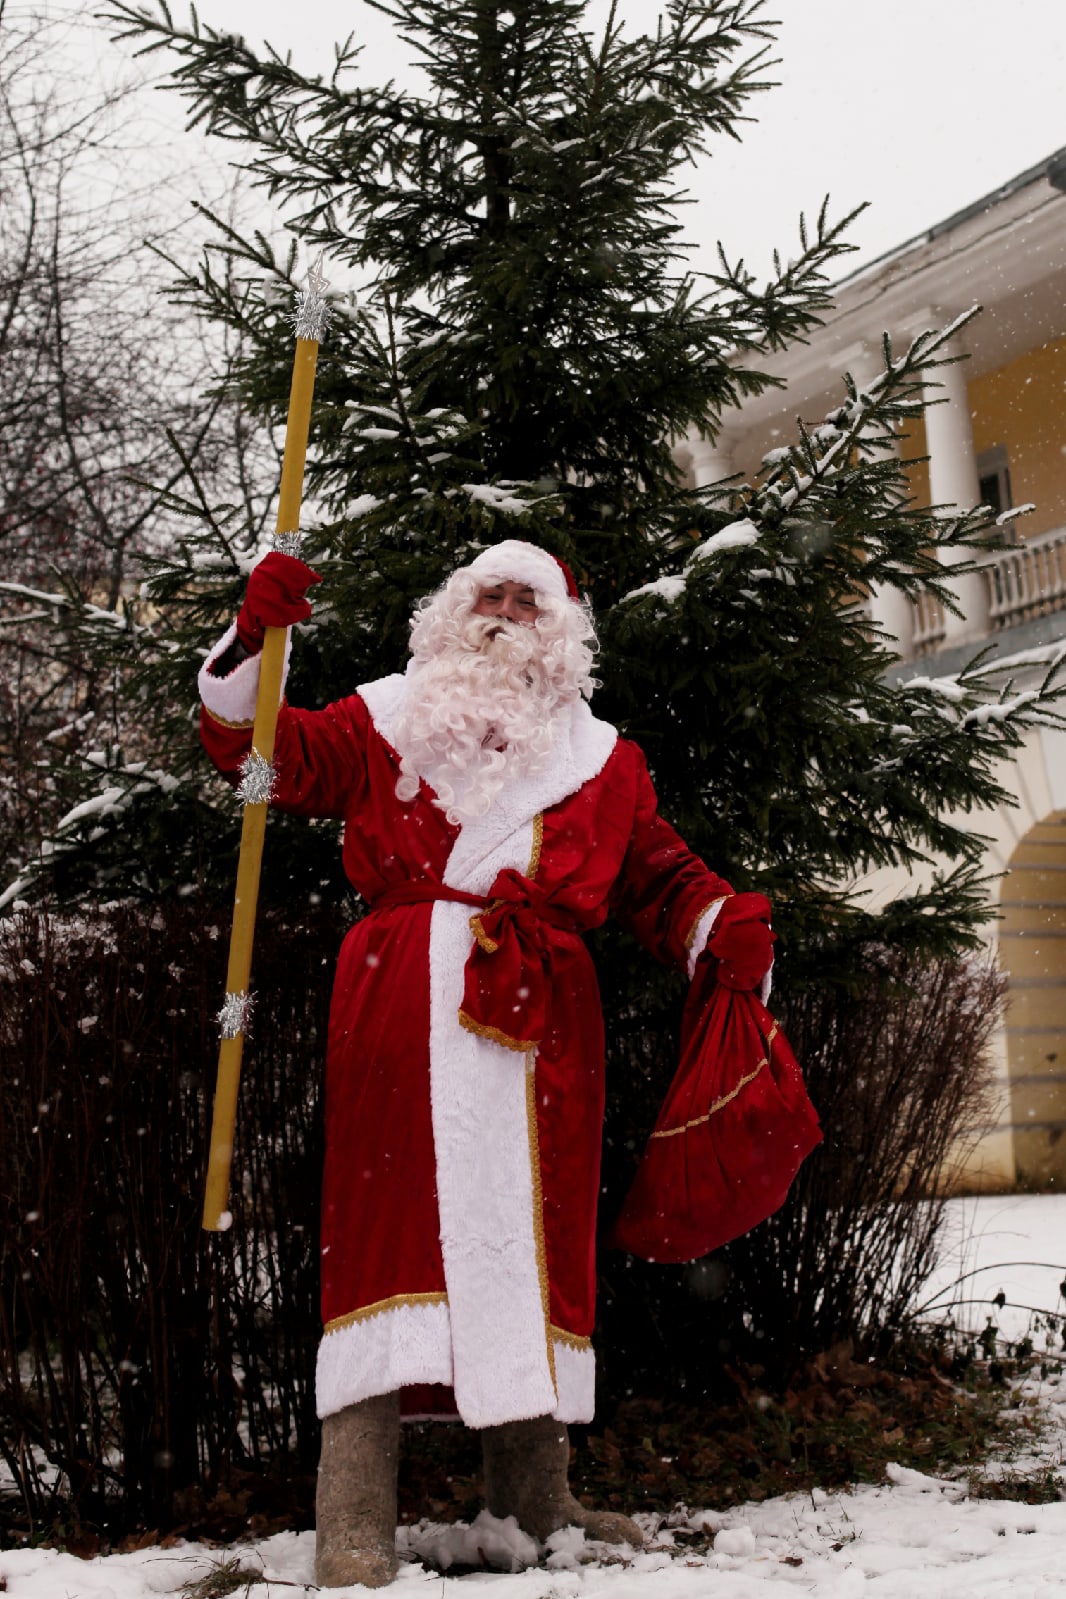 Услуги Деда Мороза и Снегурочки подорожали, но спрос на них растет. 31 декабря новогодние волшебники нарасхват. «Ключ-Медиа» узнал, сколько нынче стоит праздник дома.